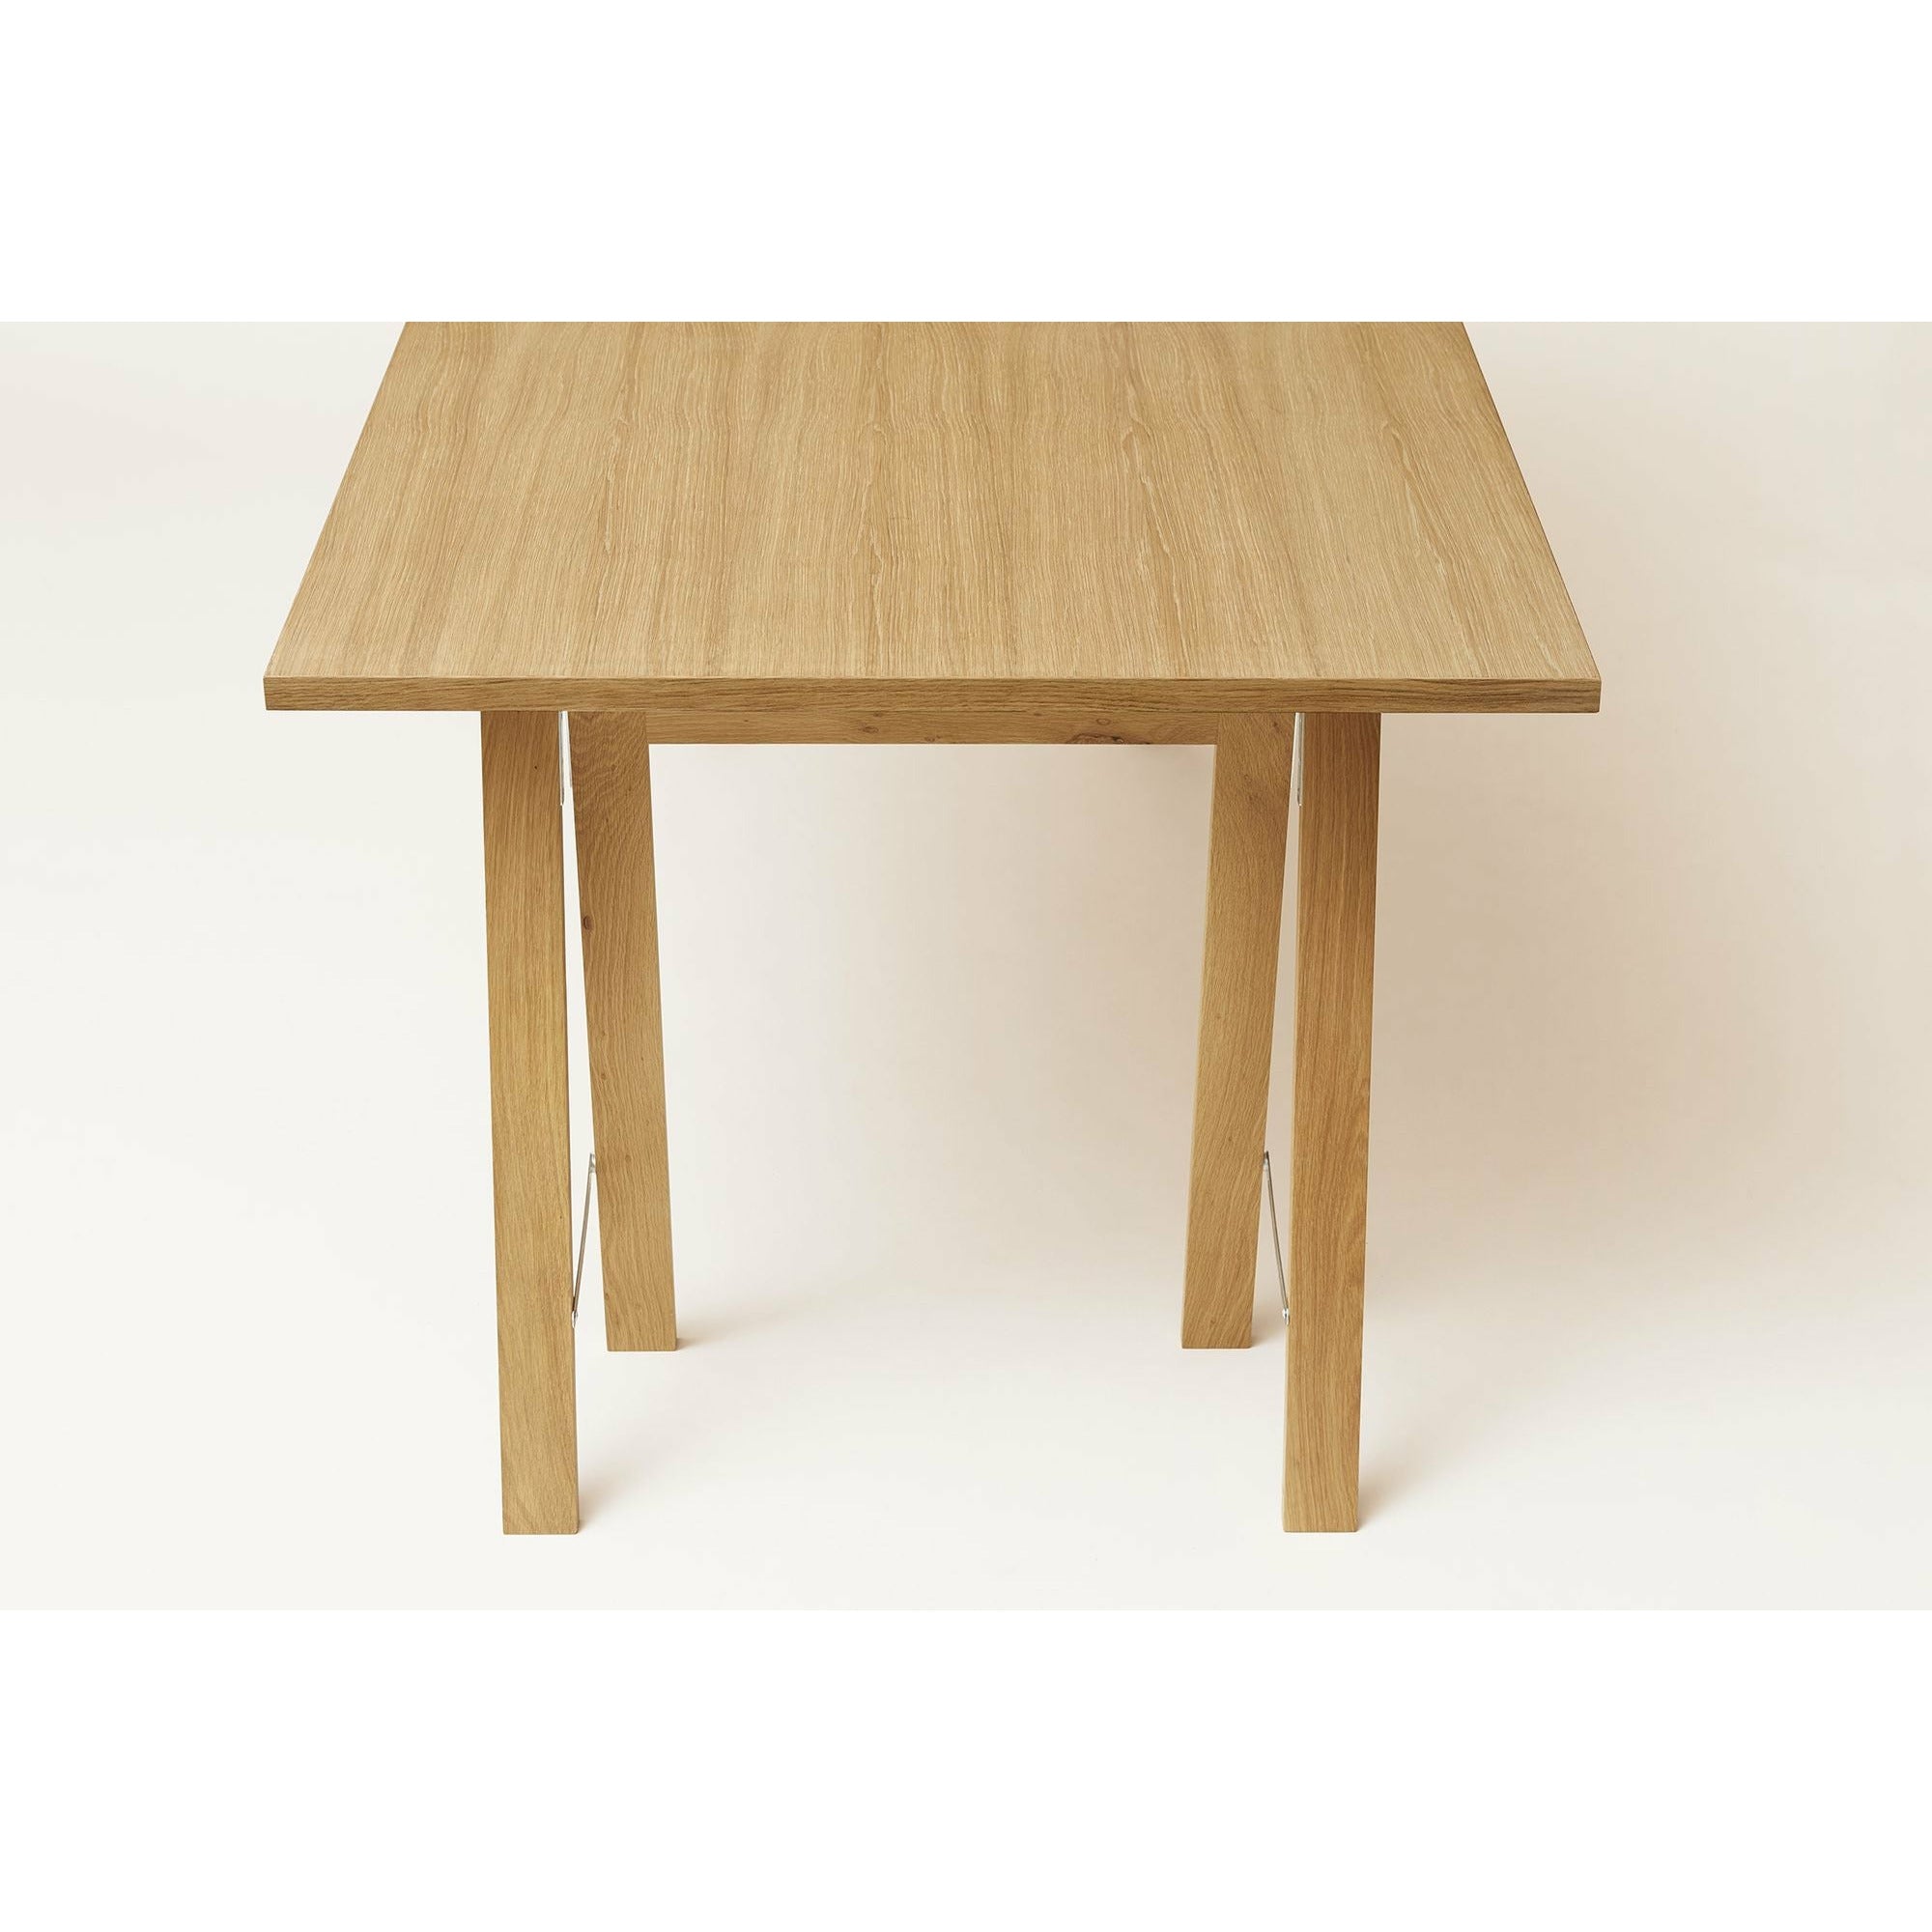 Form & Refine Linear Tischplatte 125x68 Cm. Eiche